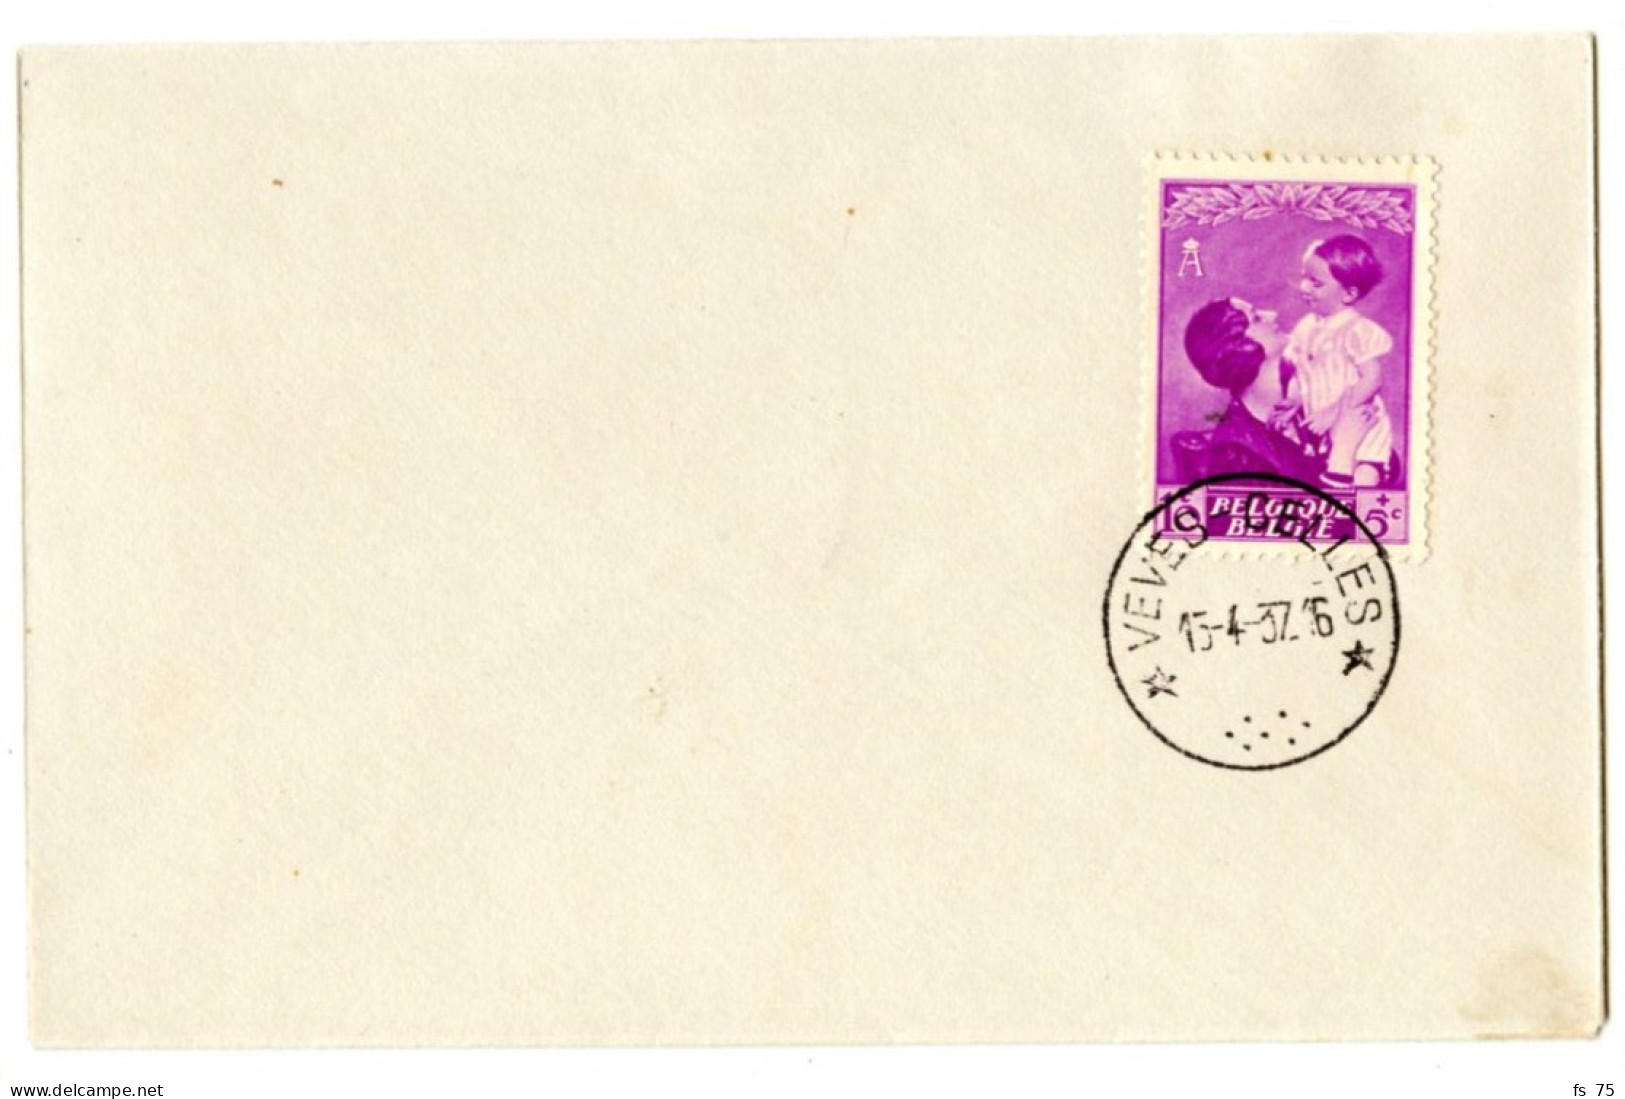 BELGIQUE - COB 447 SIMPLE CERCLE RELAIS A ETOILES VEVES CELLES SUR LETTRE, 1937 - Postmarks With Stars